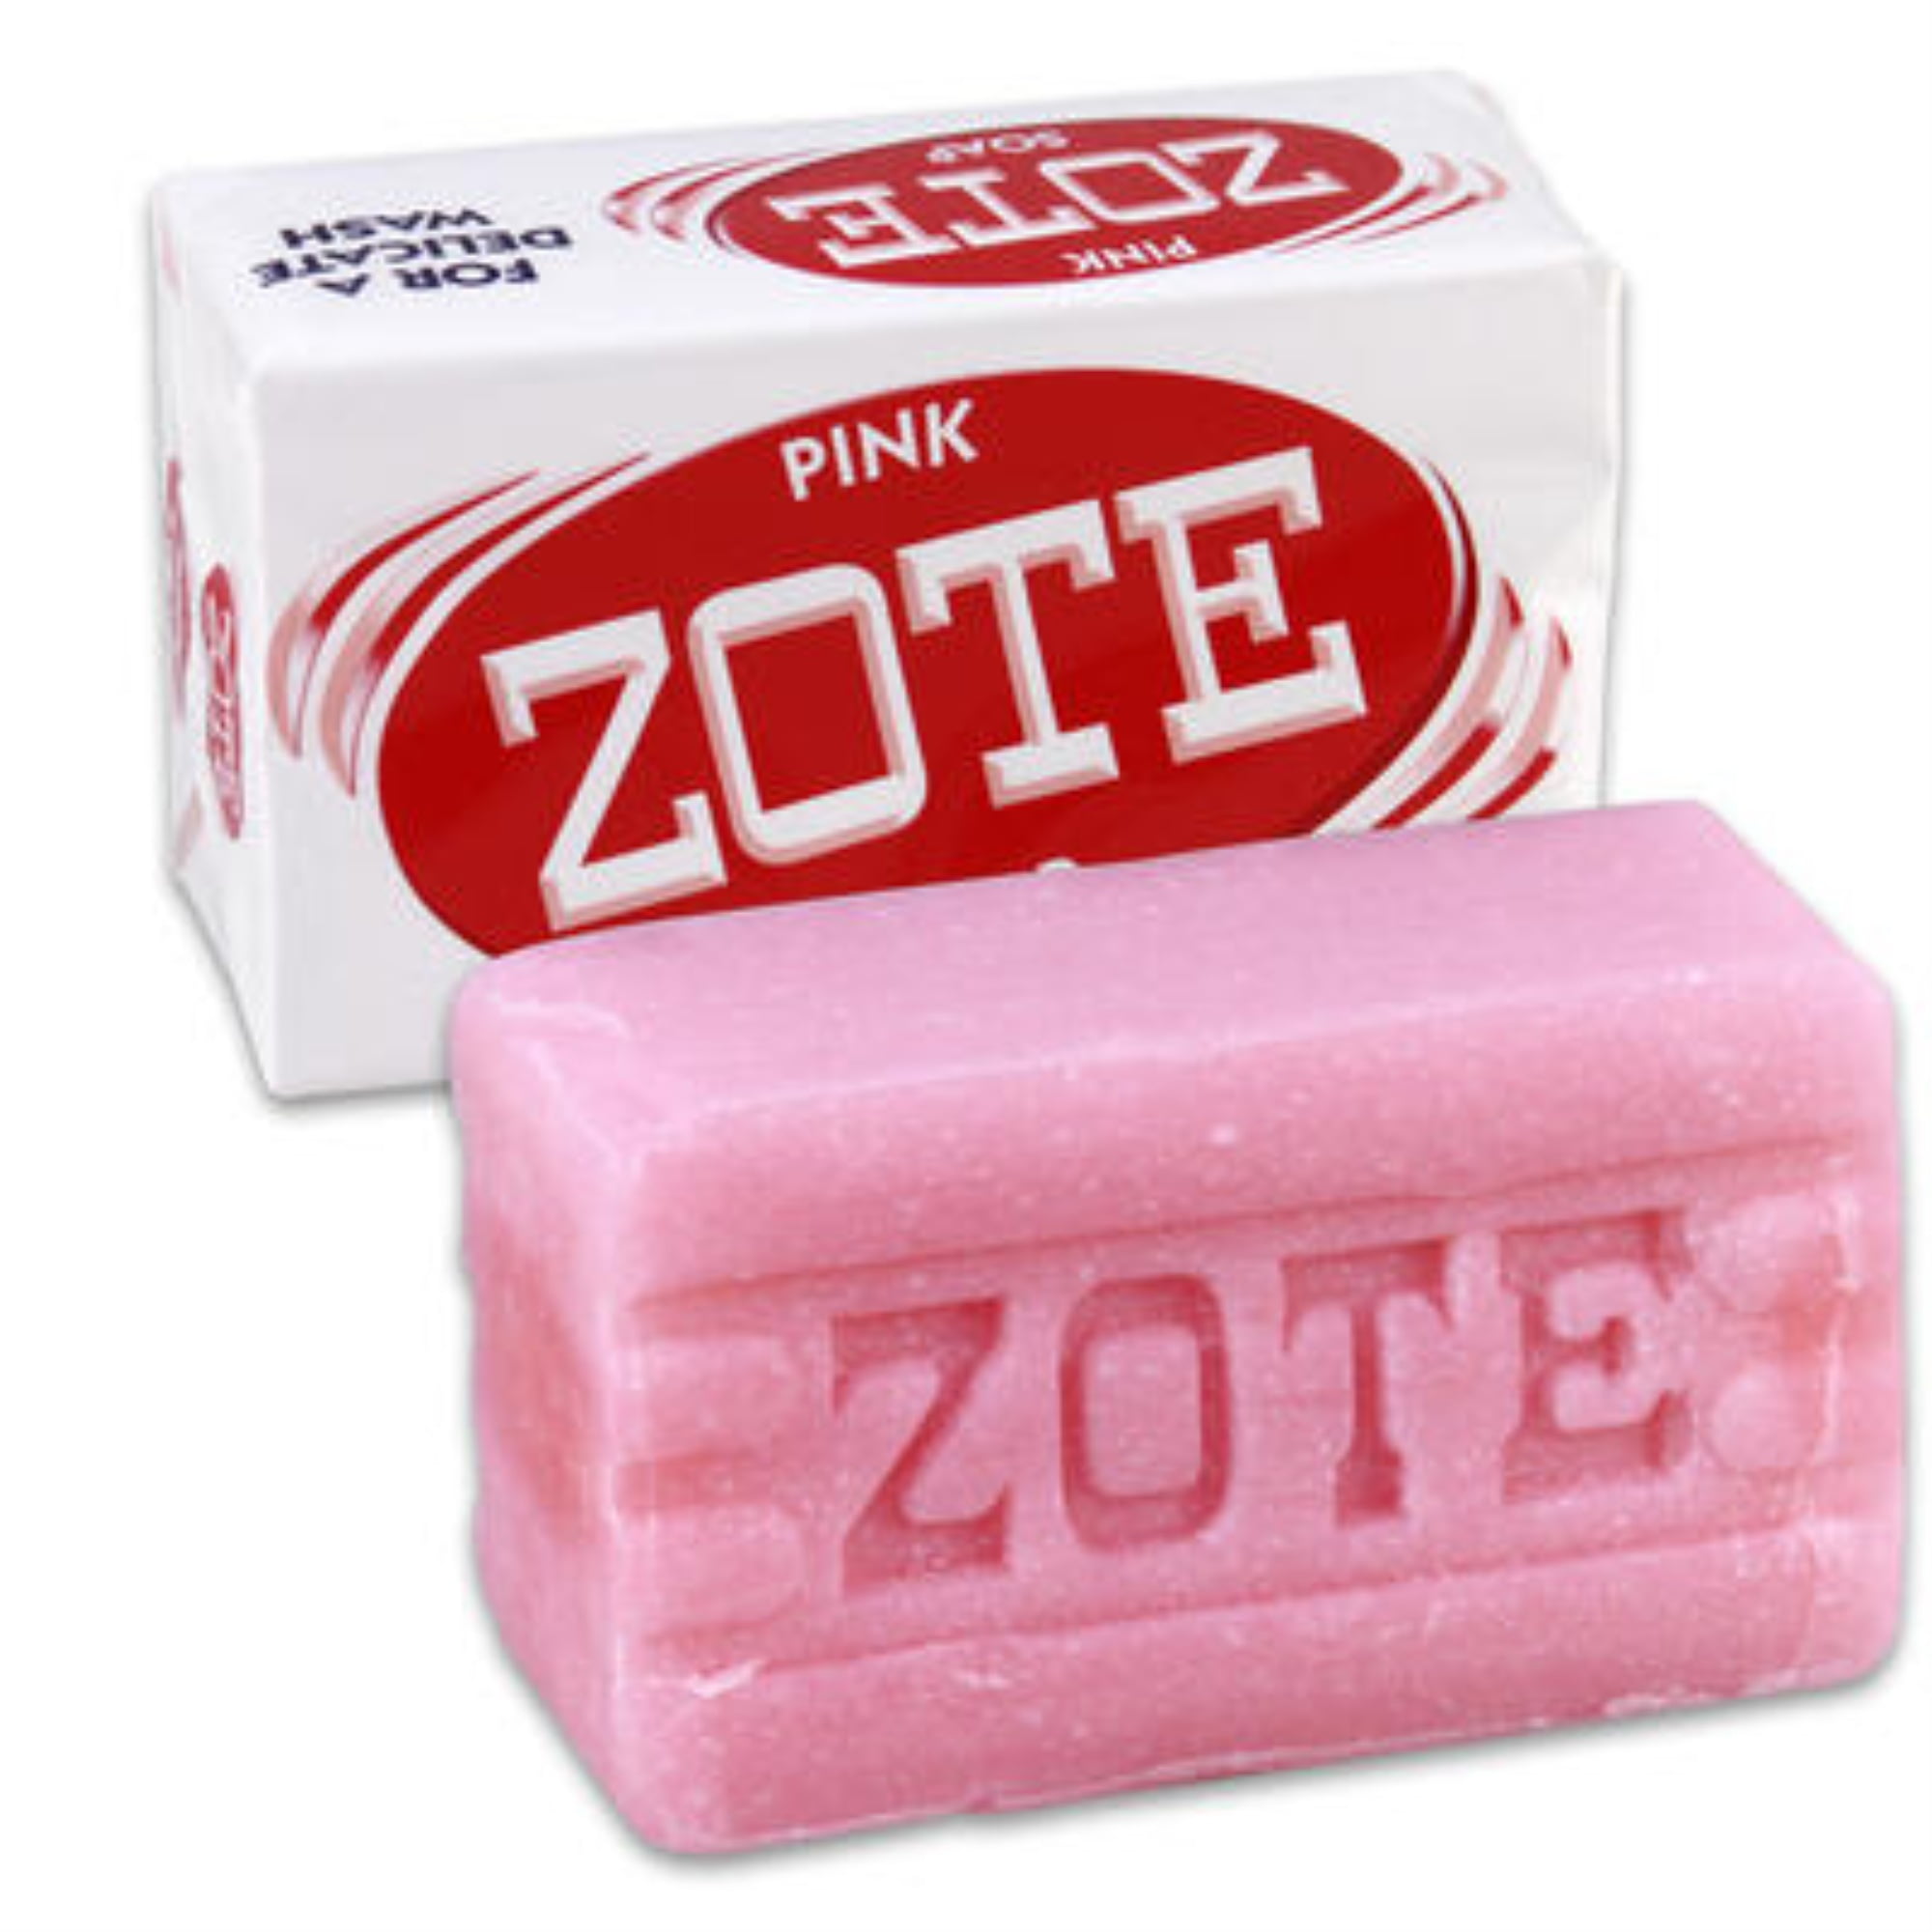 zote soap mini cheese grater｜TikTok Search